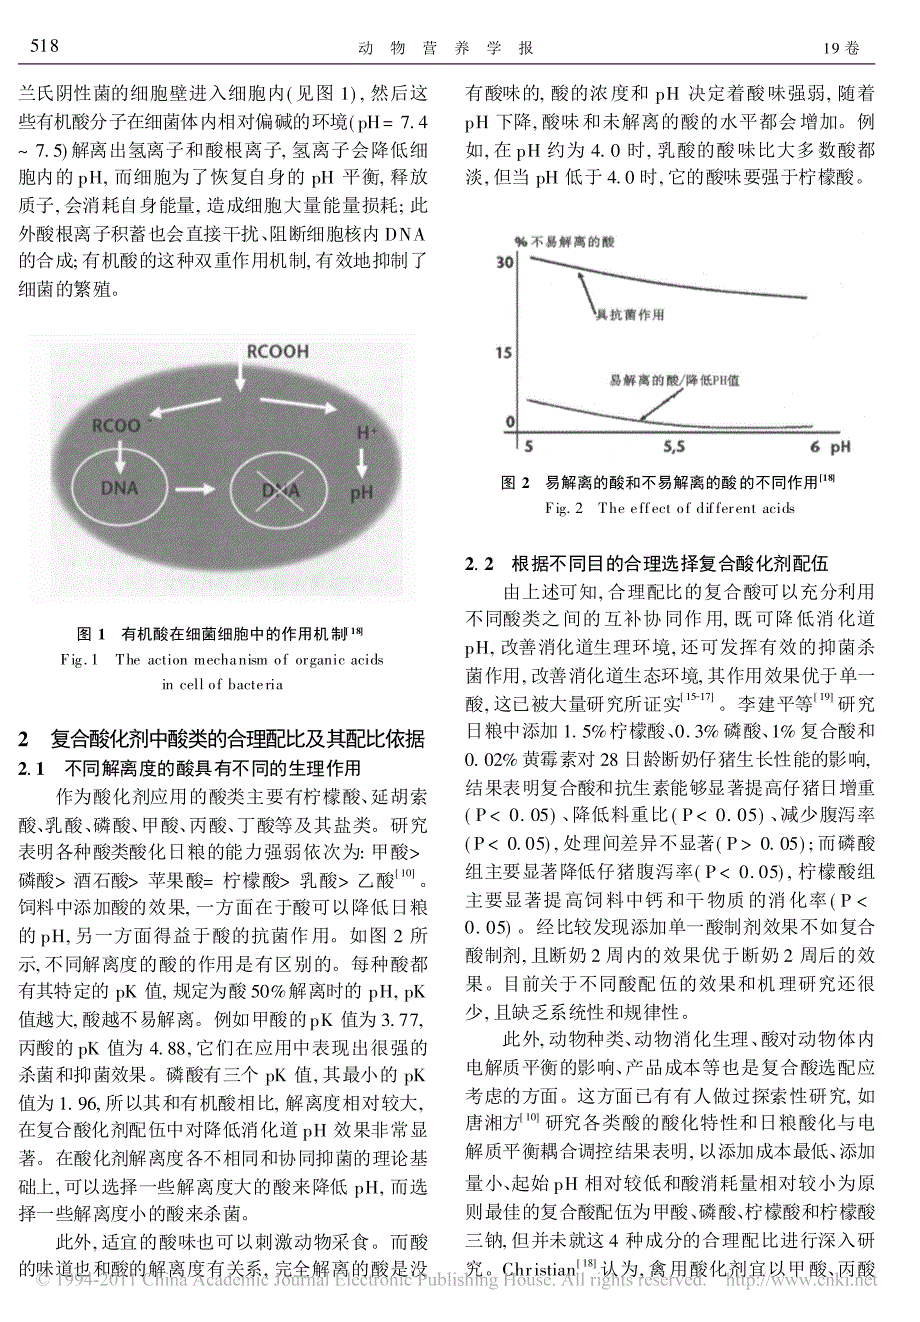 酸化剂主要生理功能和复合酸选配依据_秦圣涛_第4页